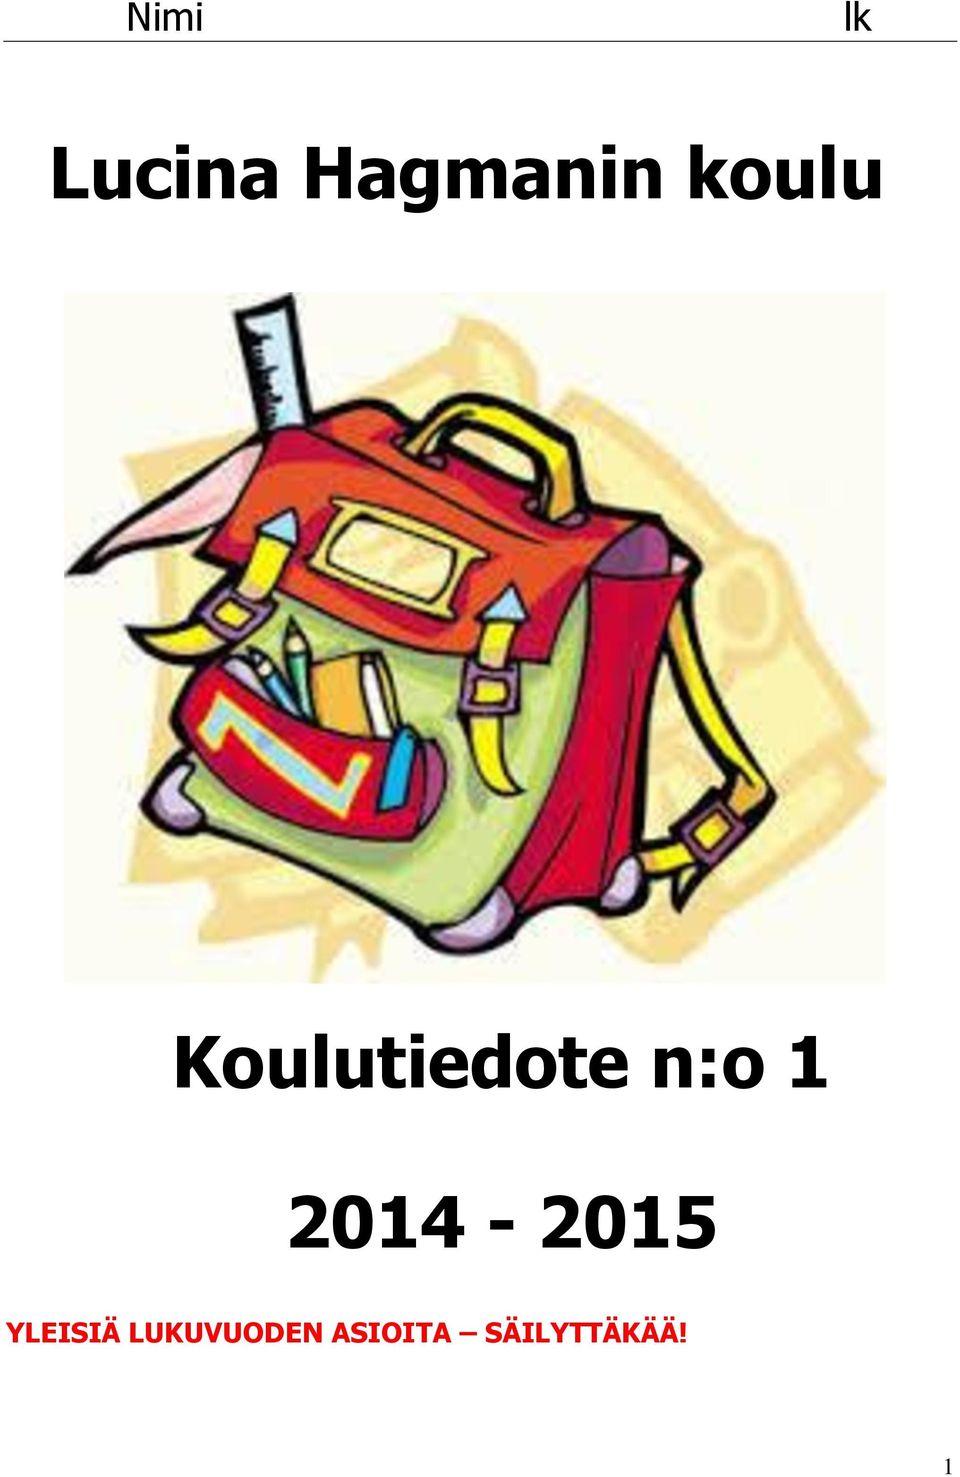 2014-2015 YLEISIÄ